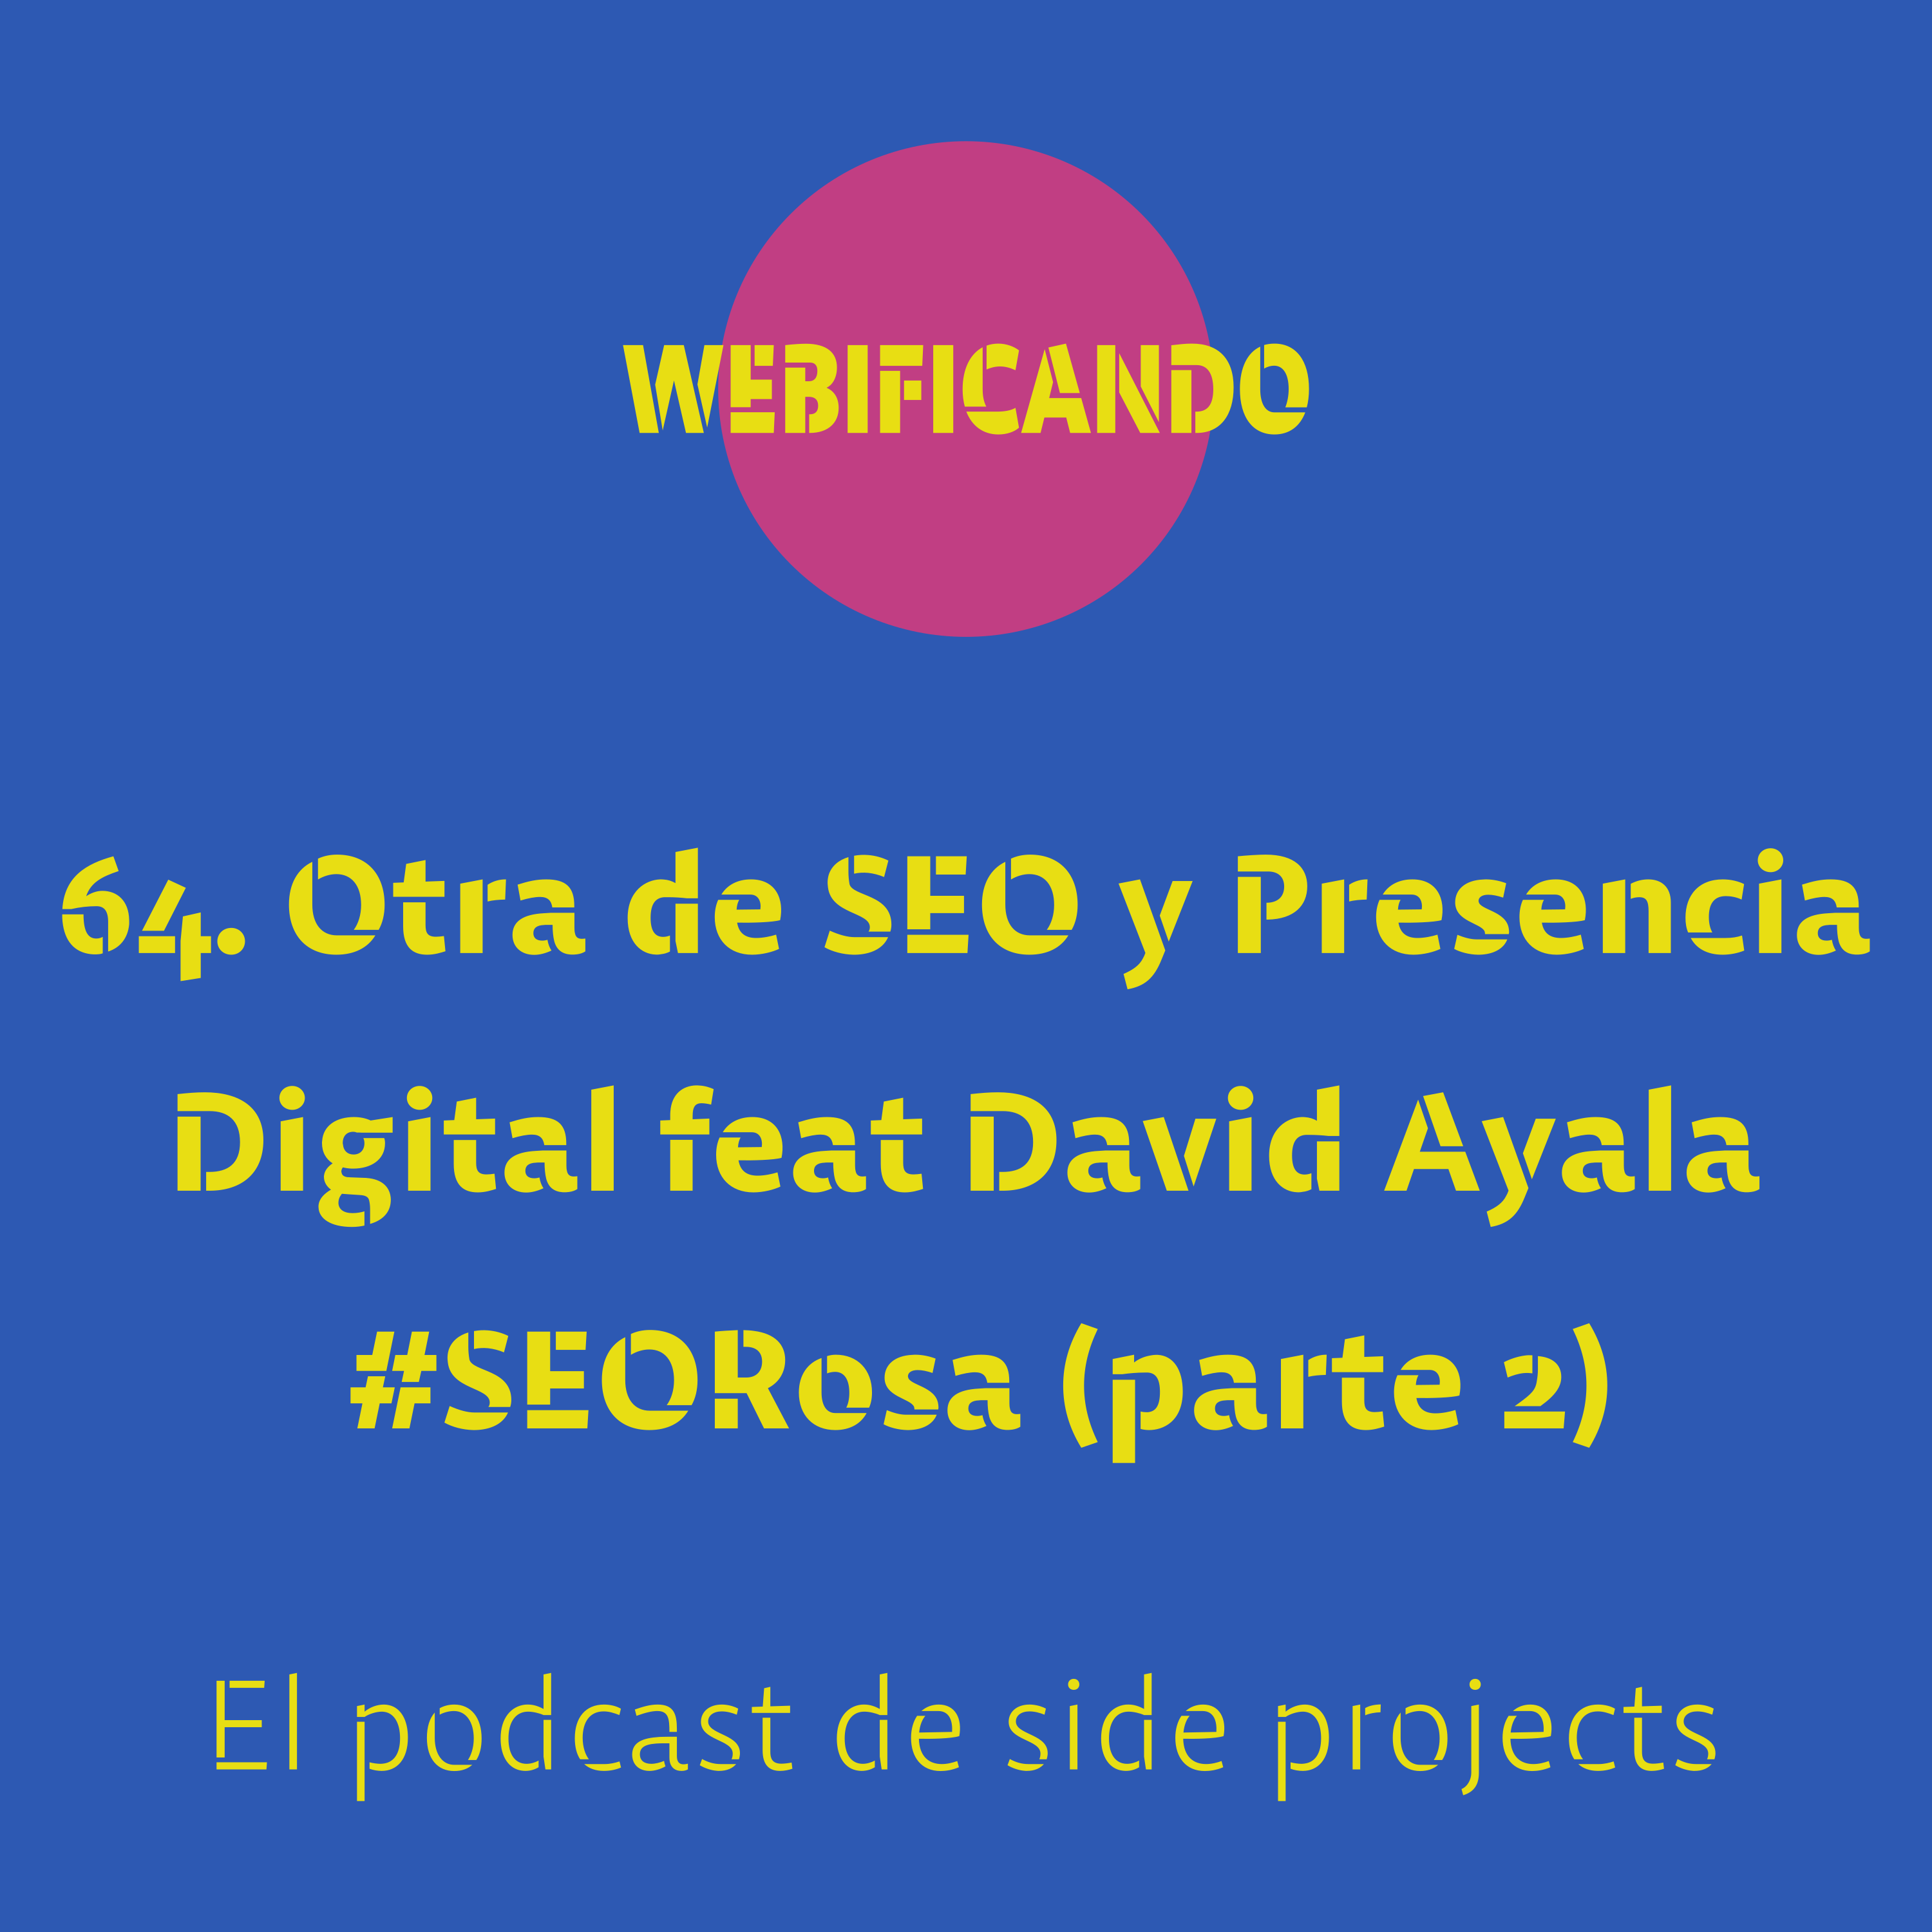 64. Otra de SEO y Presencia Digital feat David Ayala #SEORosa (parte 2)